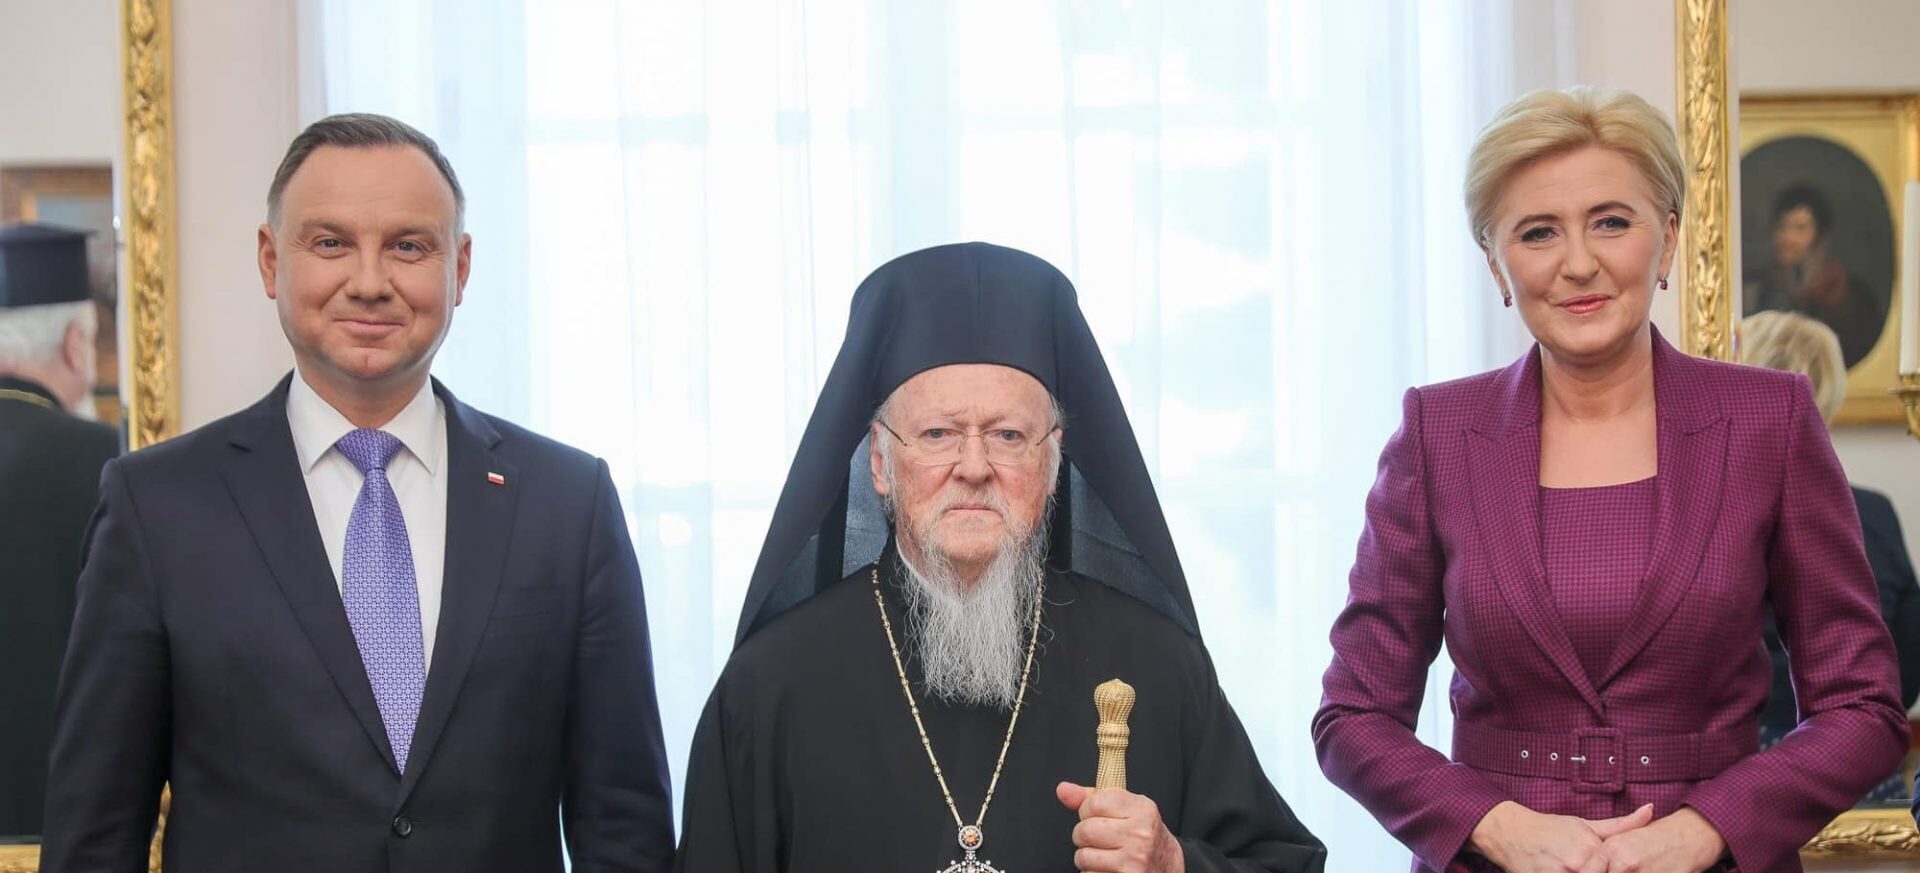 Ο Οικουμενικός Πατριάρχης στην Πολωνία